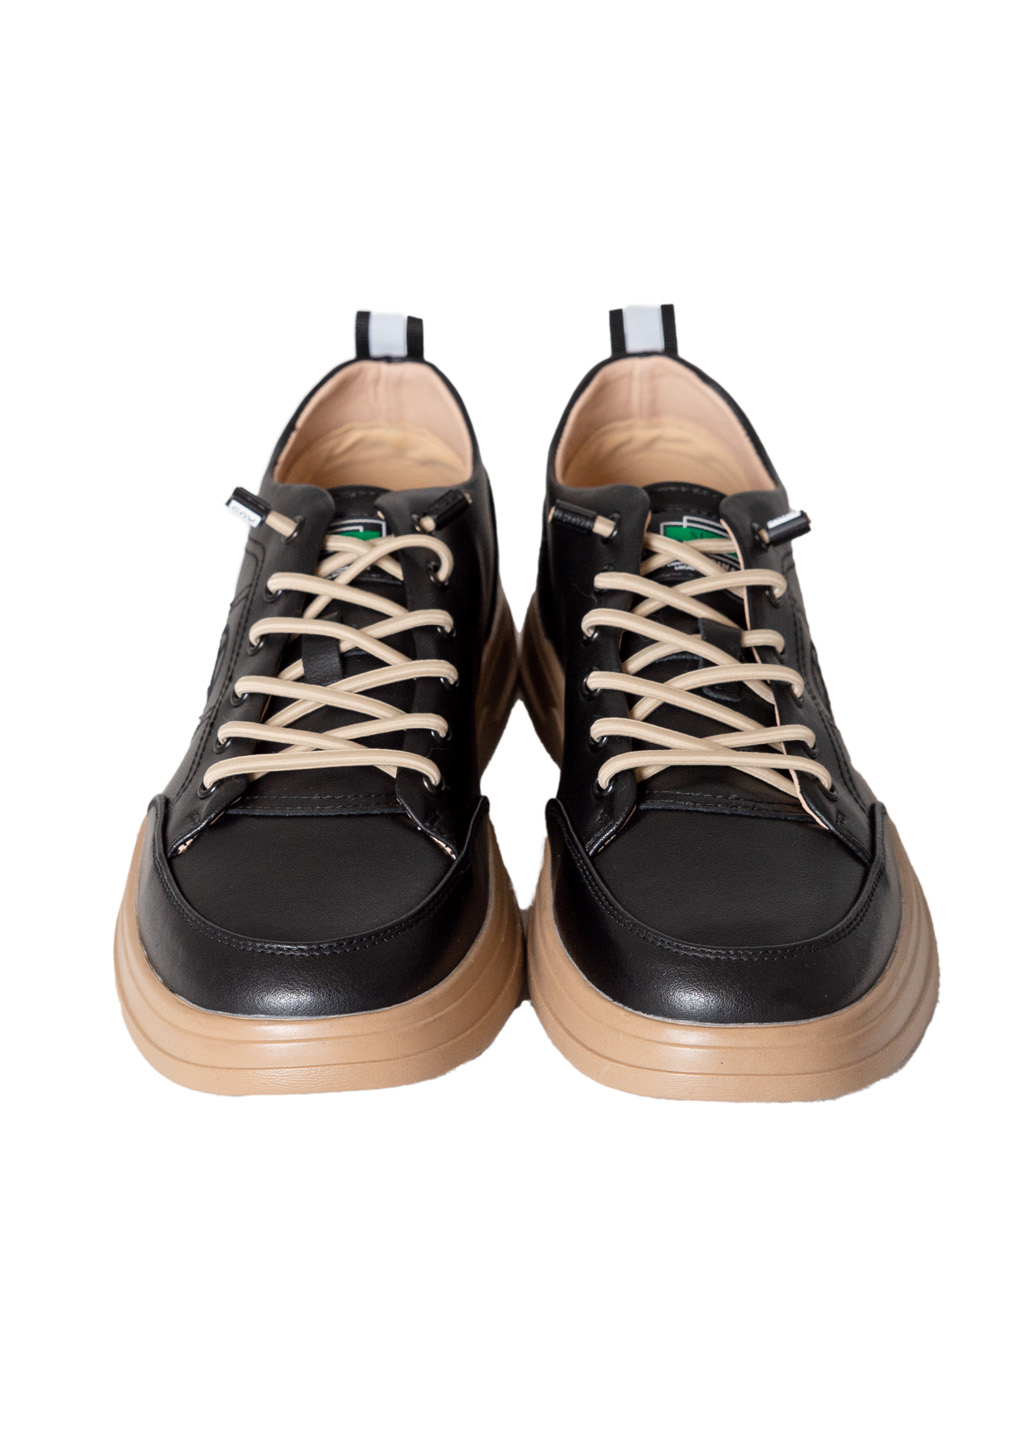 Жіночі туфлі Lifexpert з натуральної шкіри чорного кольору на шнурівці